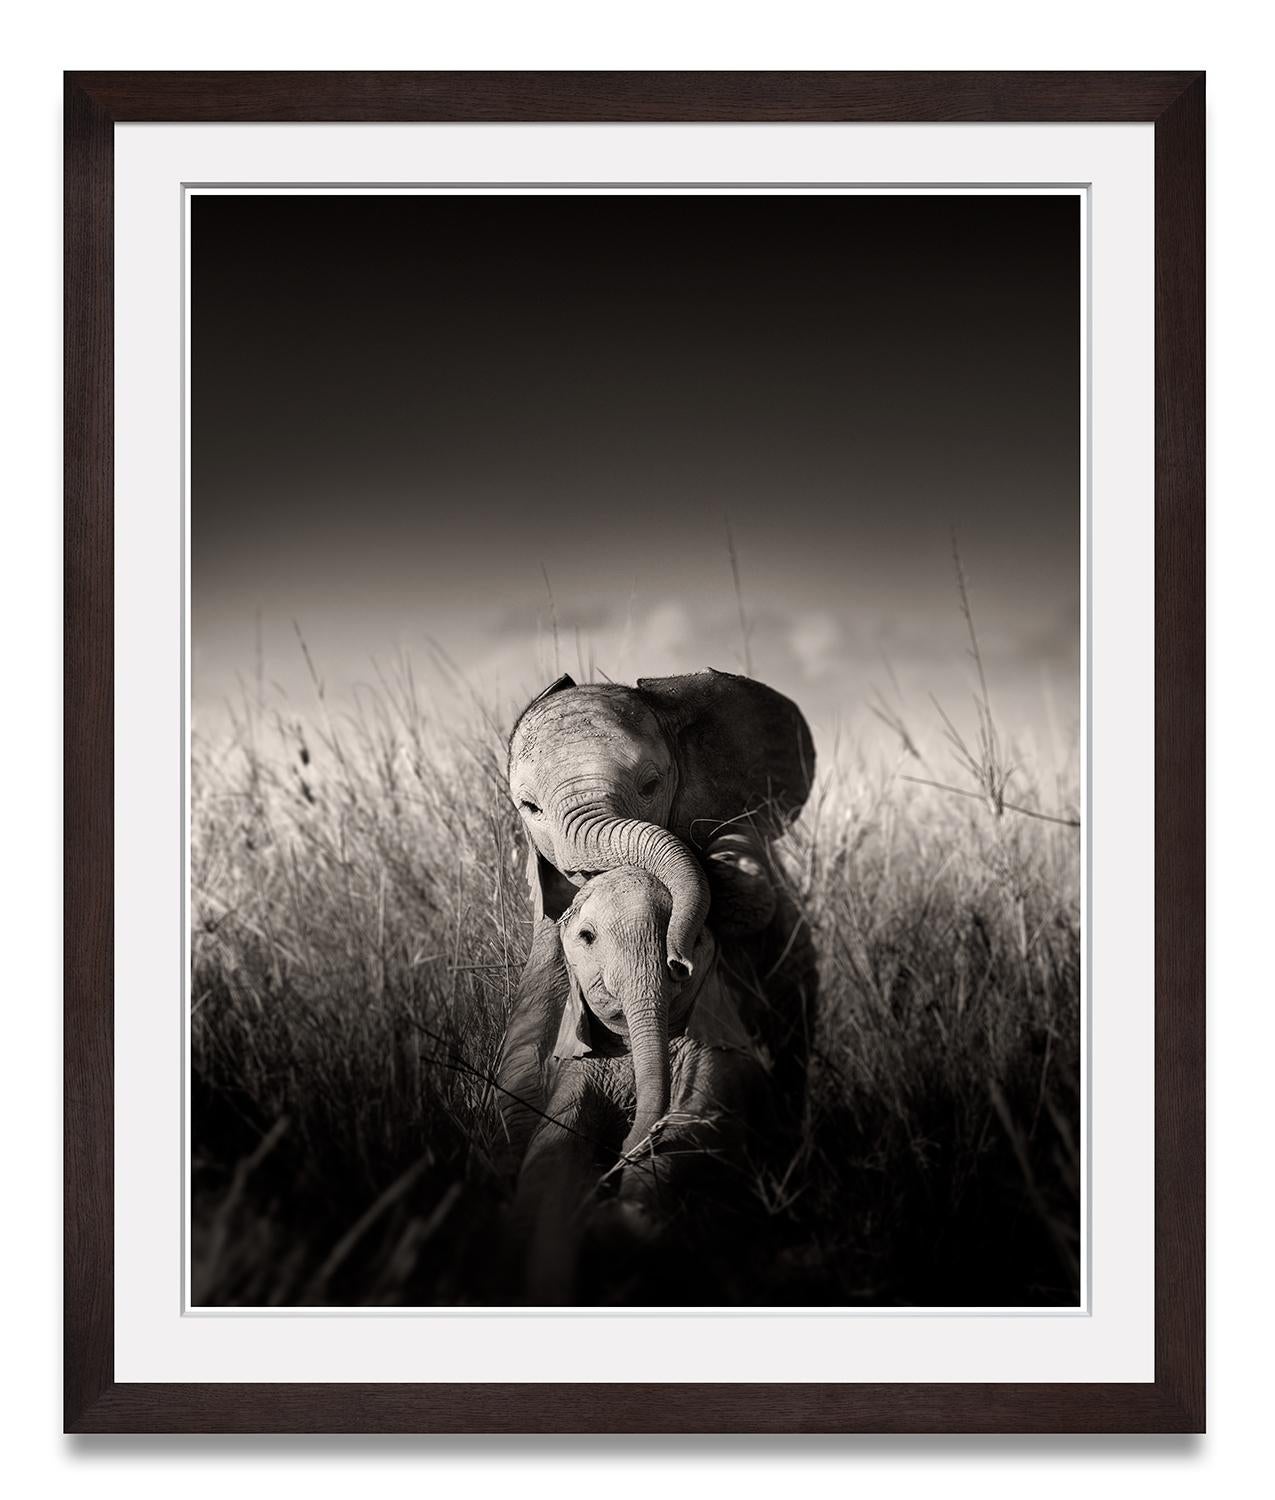 Bébés éléphants sauvages jouant III, animaux, photographies d'animaux sauvages, noir et blanc - Photograph de Joachim Schmeisser